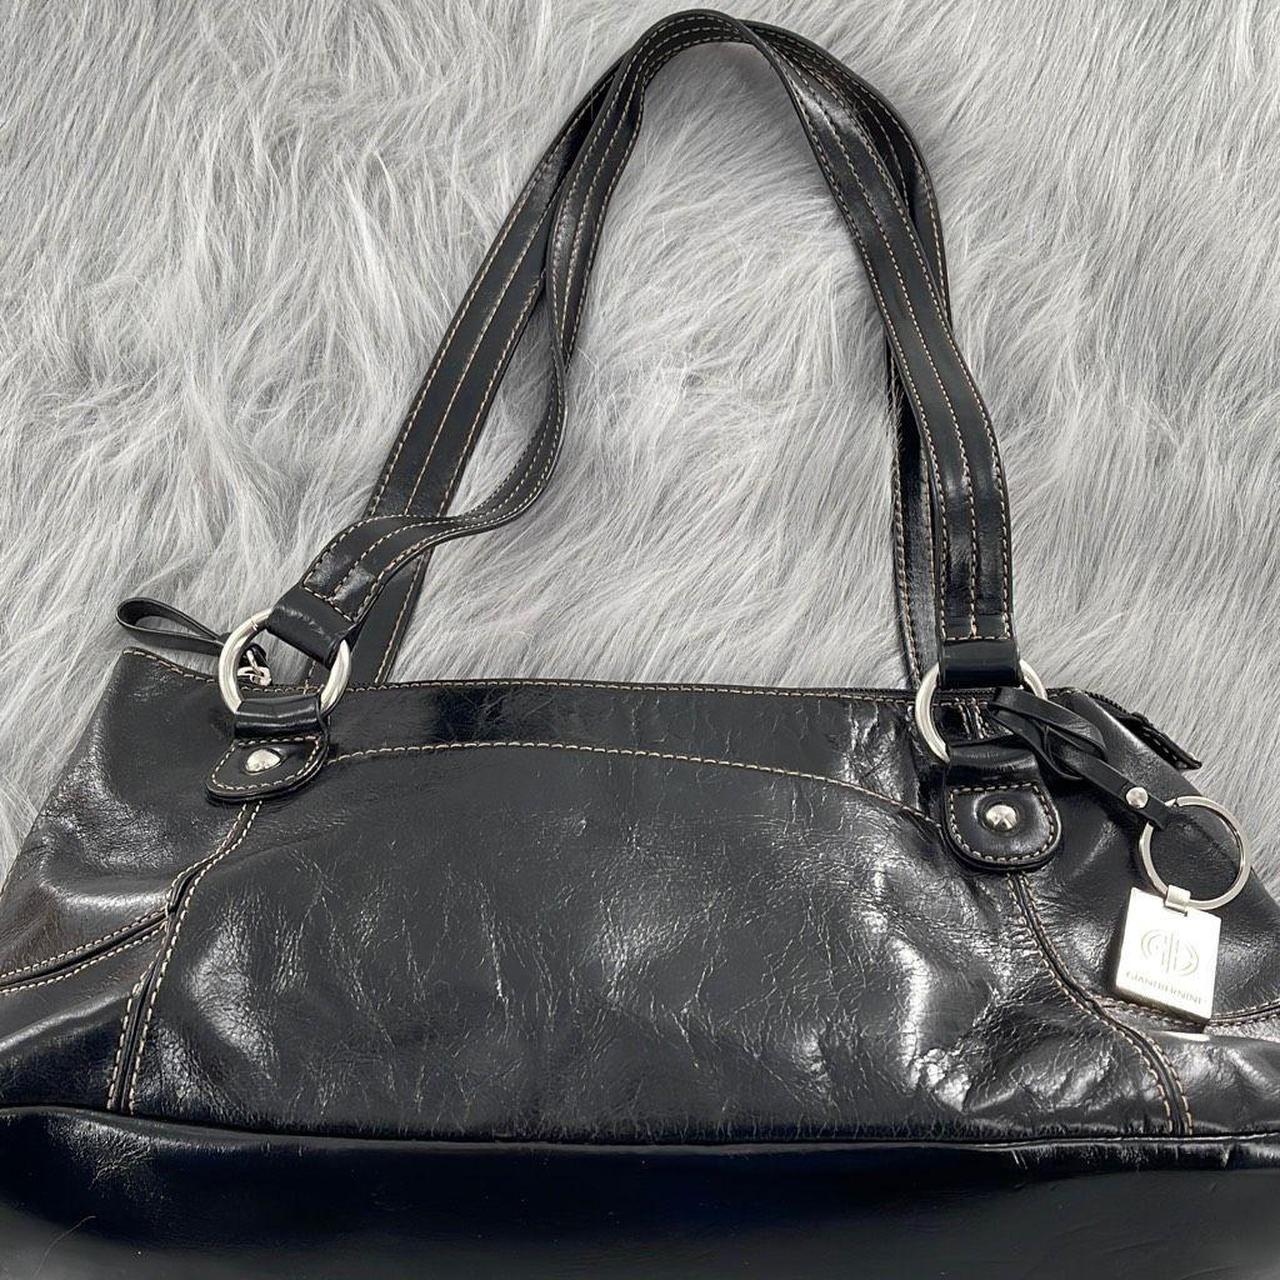 Giani Bernini medium sized black leather double - Depop